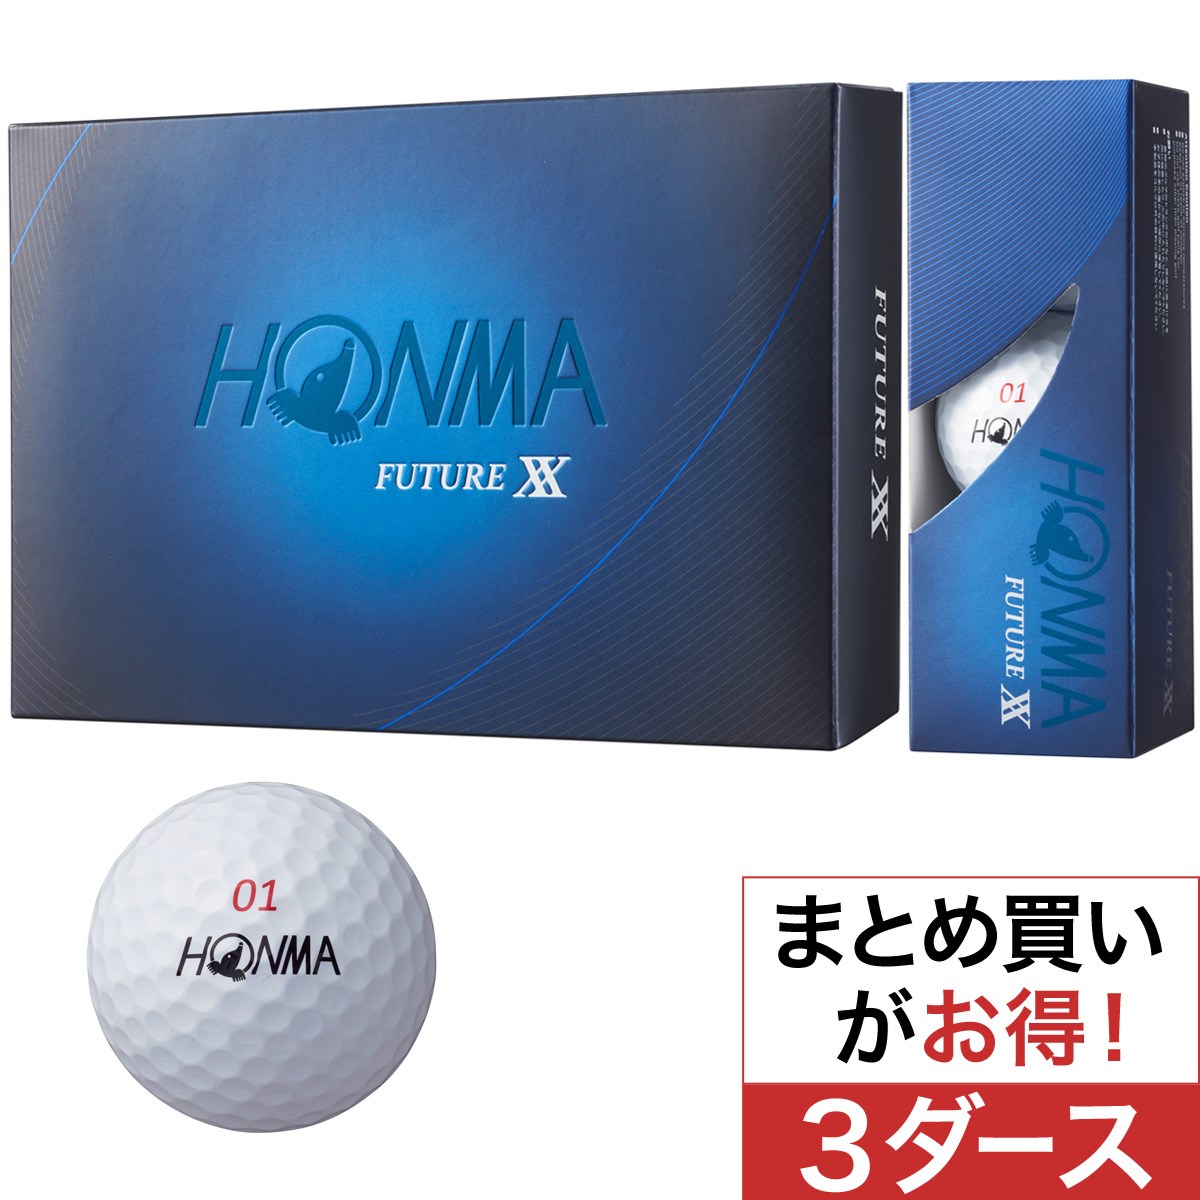 本間ゴルフ(HONMA GOLF) FUTURE XX ボール 3ダースセット 